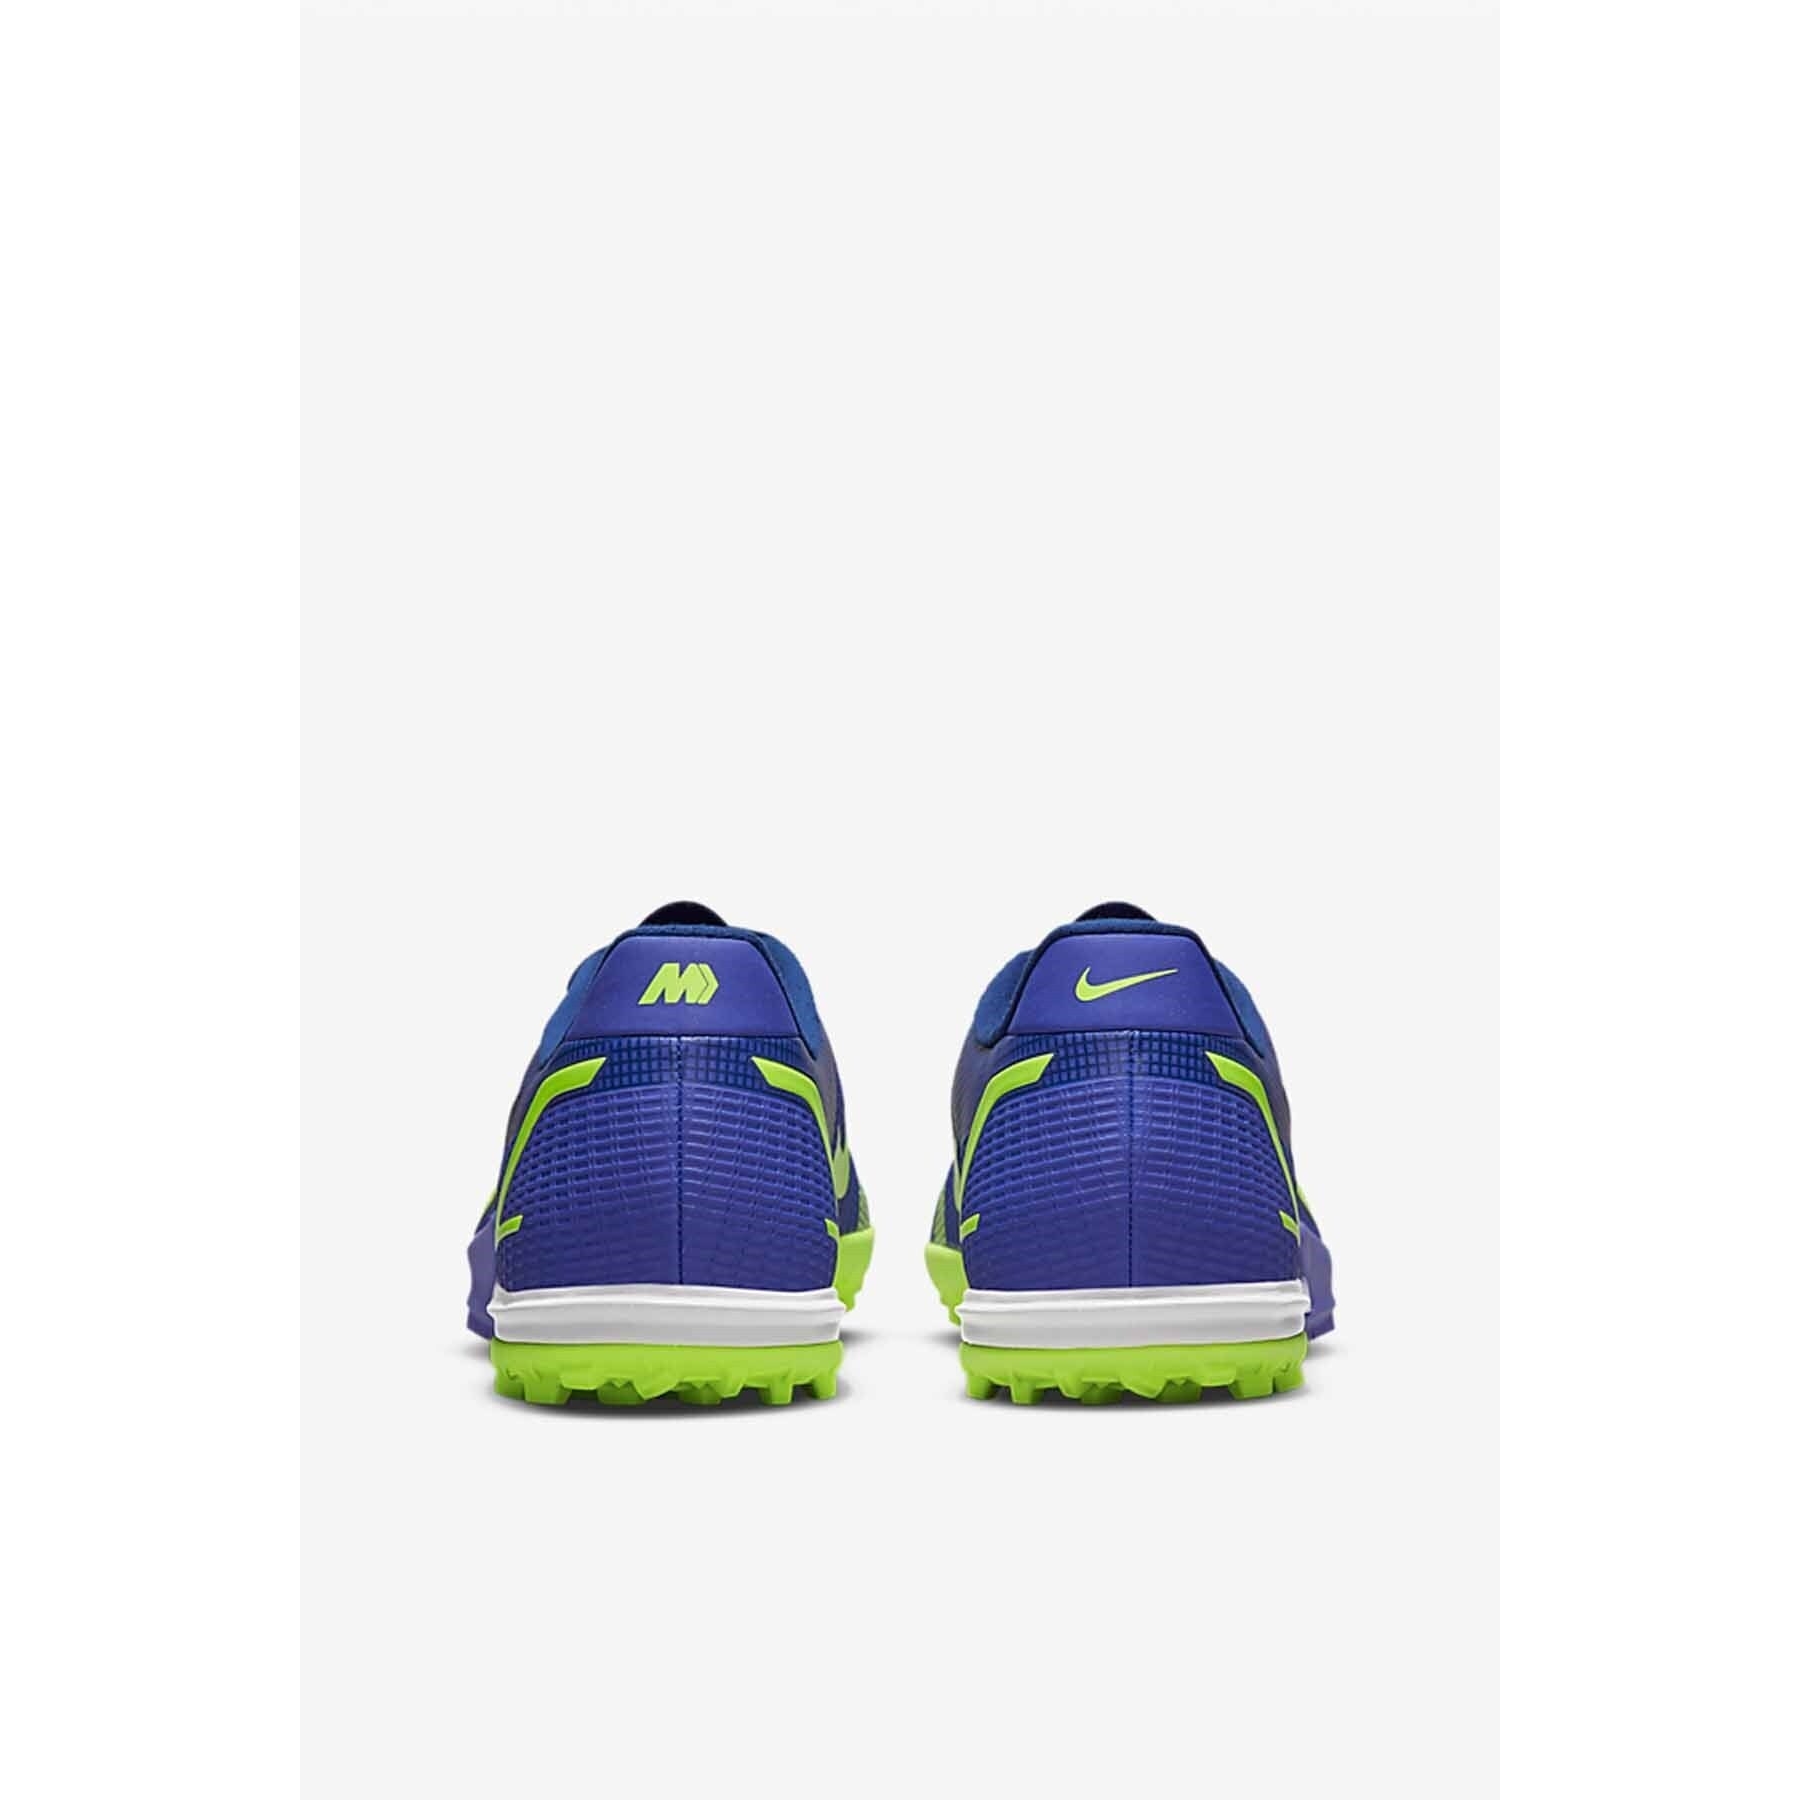 Nike Mercurial Vapor 14 Halı Saha Ayakkabısı (CV0978-474)